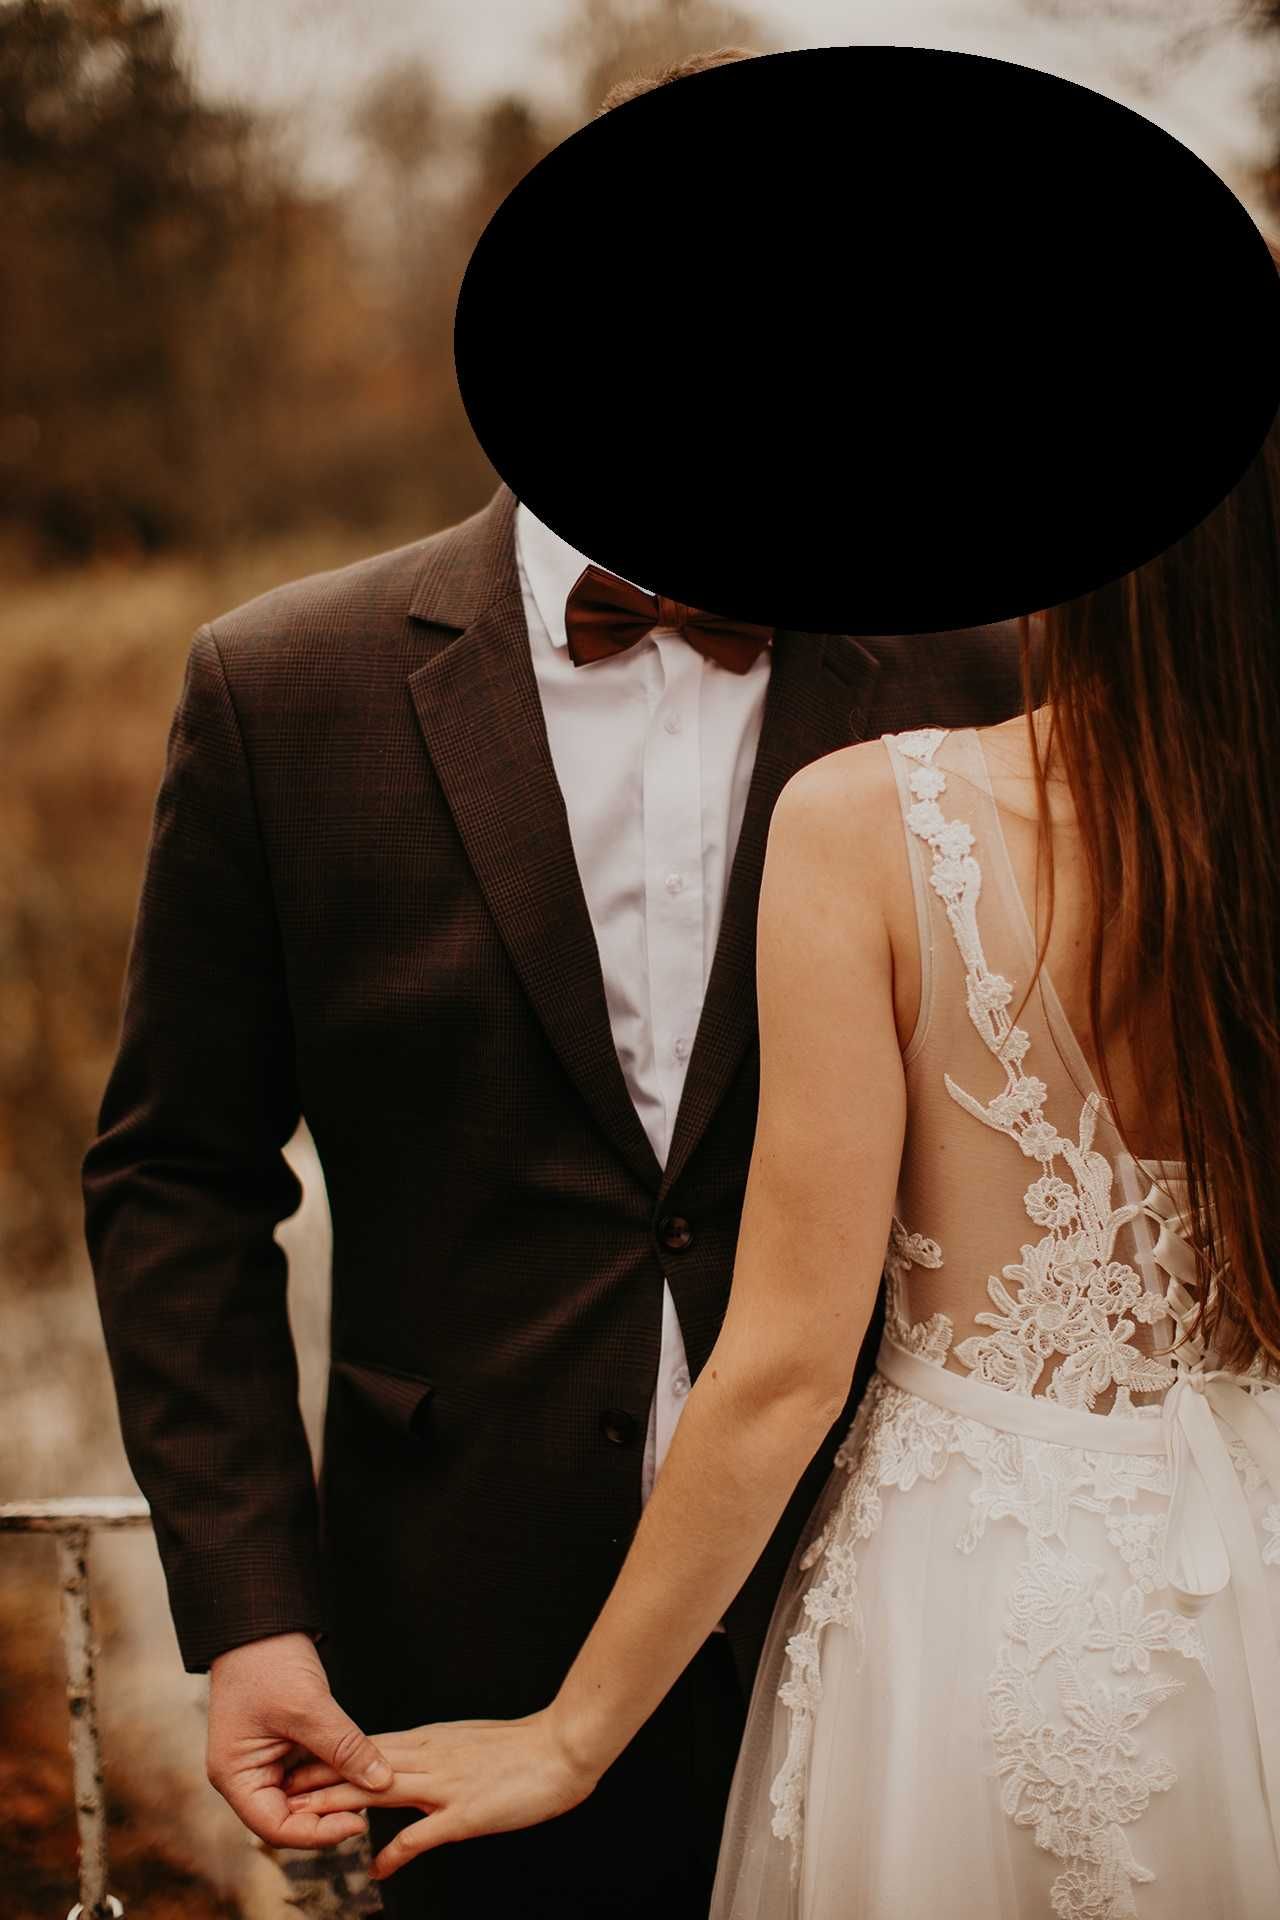 Brokatowa koronkowa suknia ślubna z wiązanym gorsetem